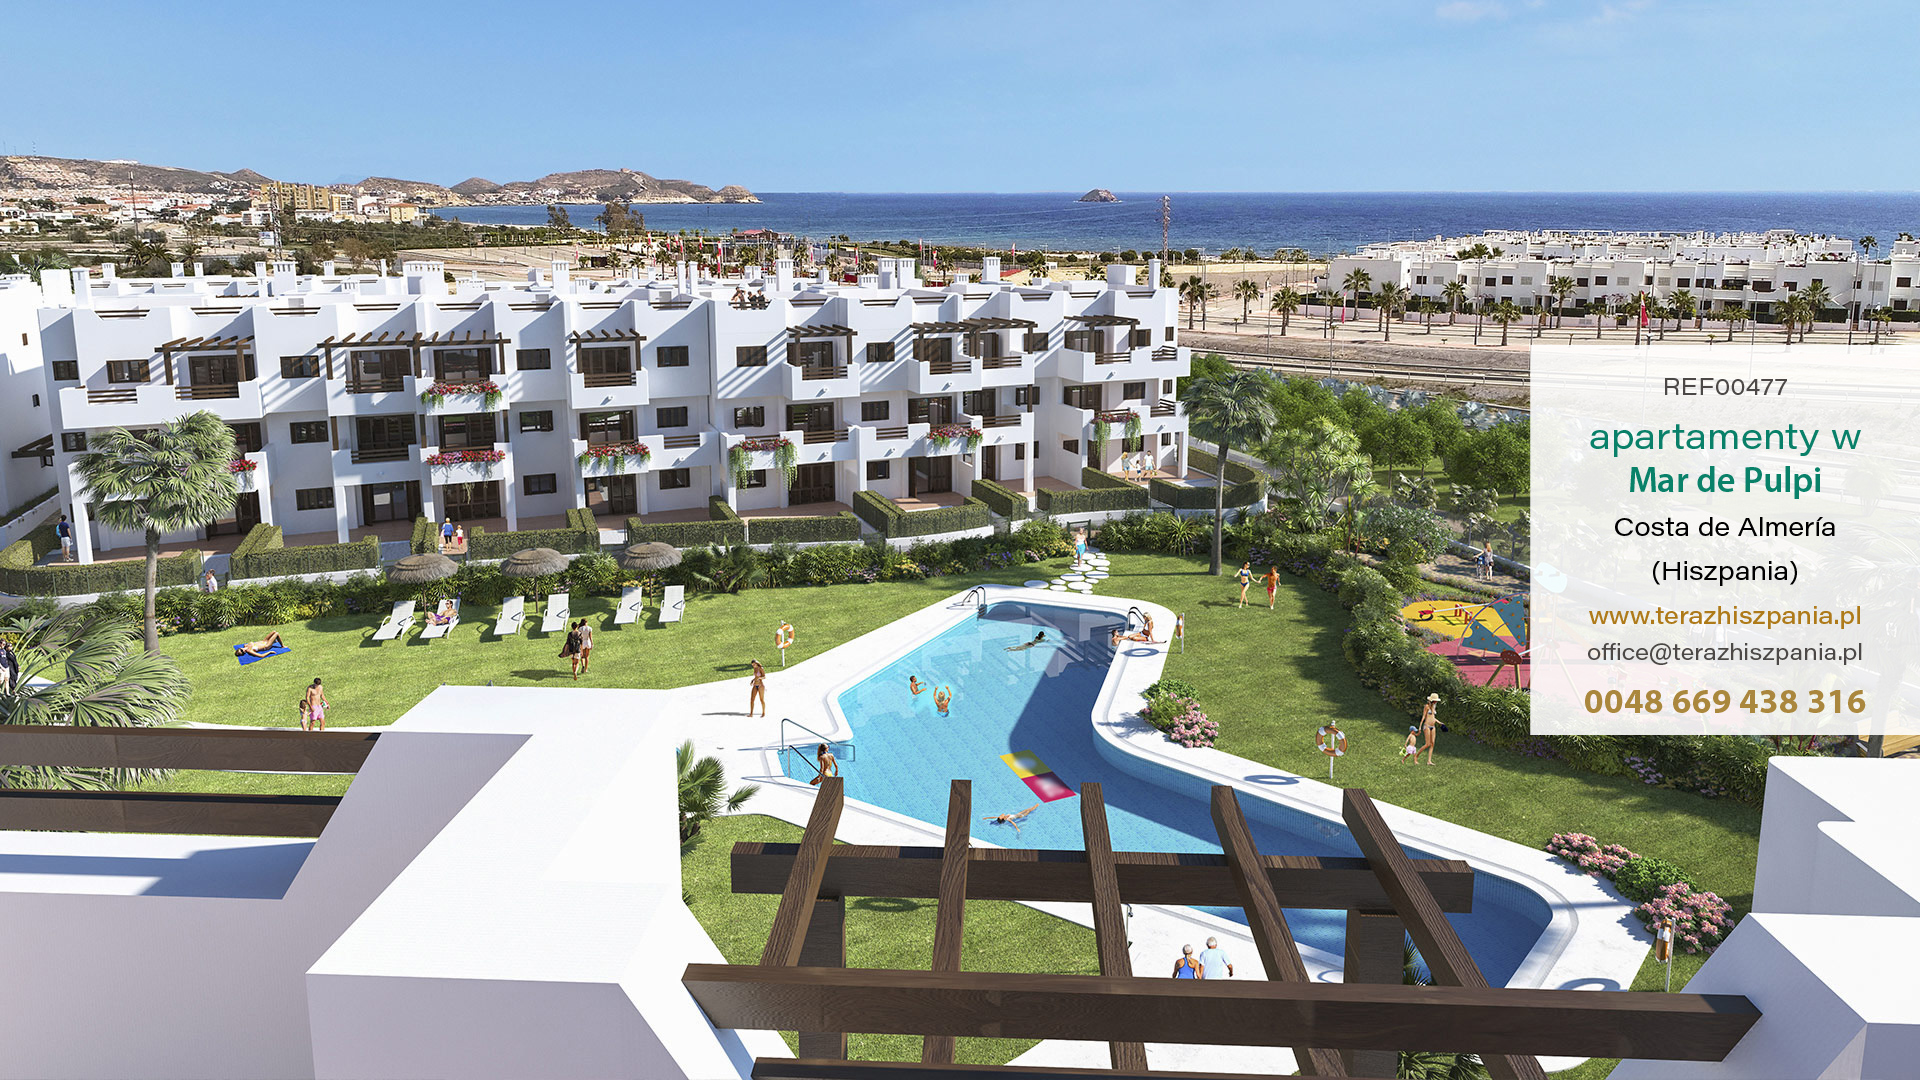 REF00477 Apartamenty w Mar de Pulpi z na wybrzeżu Almerii, w południowej Hiszpanii.